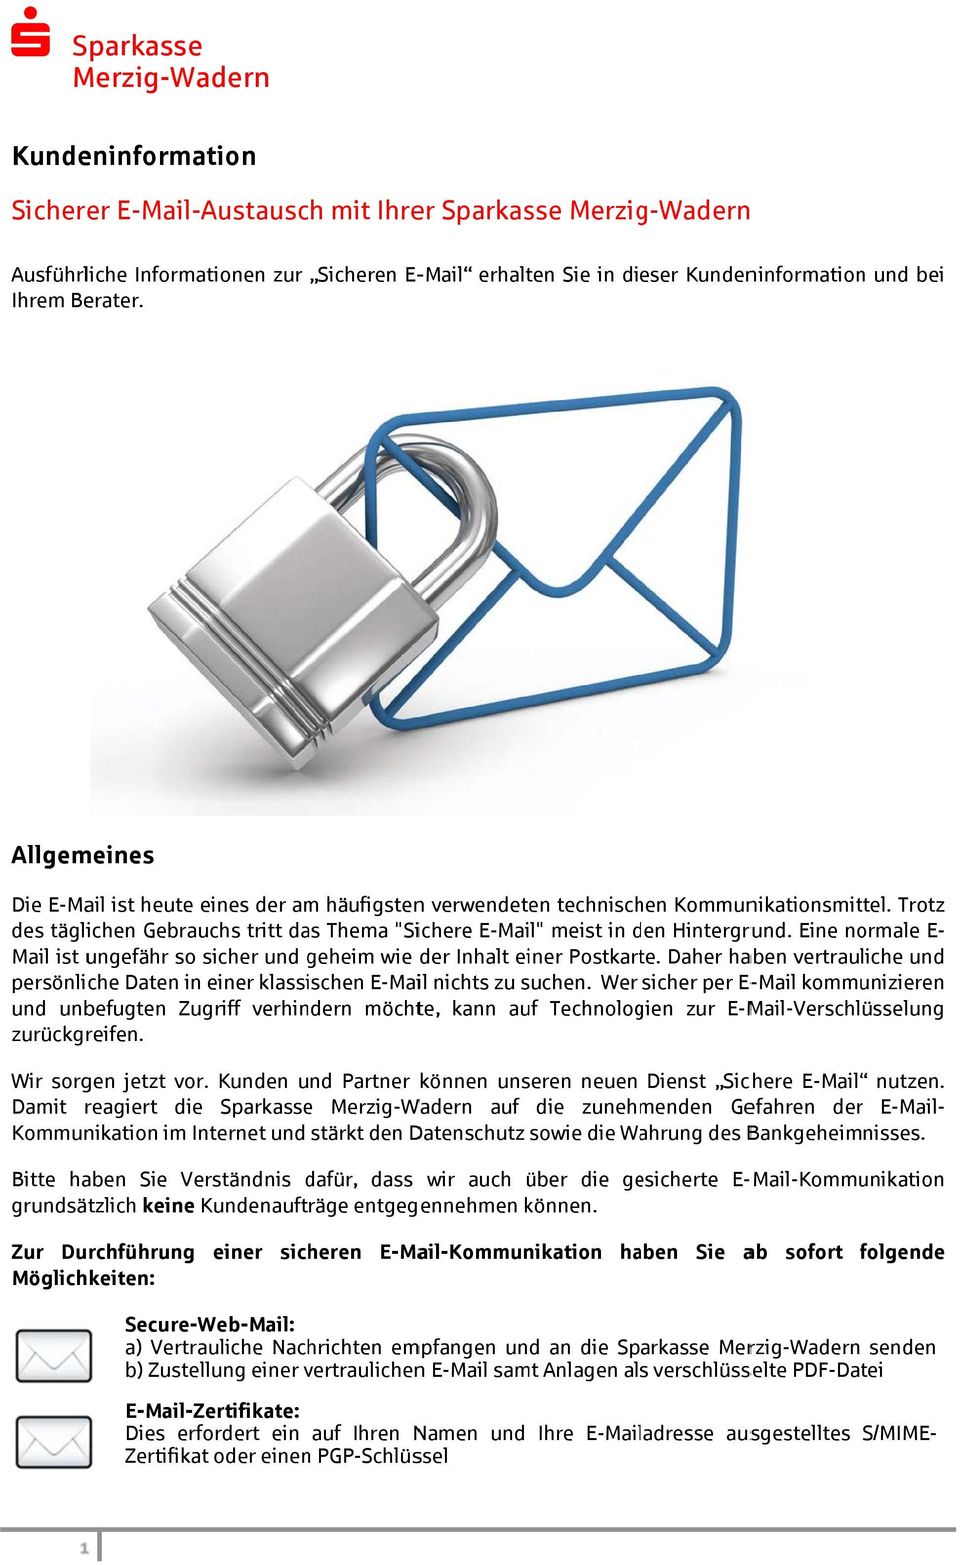 vertraulichen n E-Mail samt Anlagen als verschlüsselte PDF-Datei E-Mail-Zertifikate: Dies erfordert ein auf Ihren Namen und Zertifikat oder einenn PGP-Schlüssel Allgemeines Die E-Mail ist heute eines